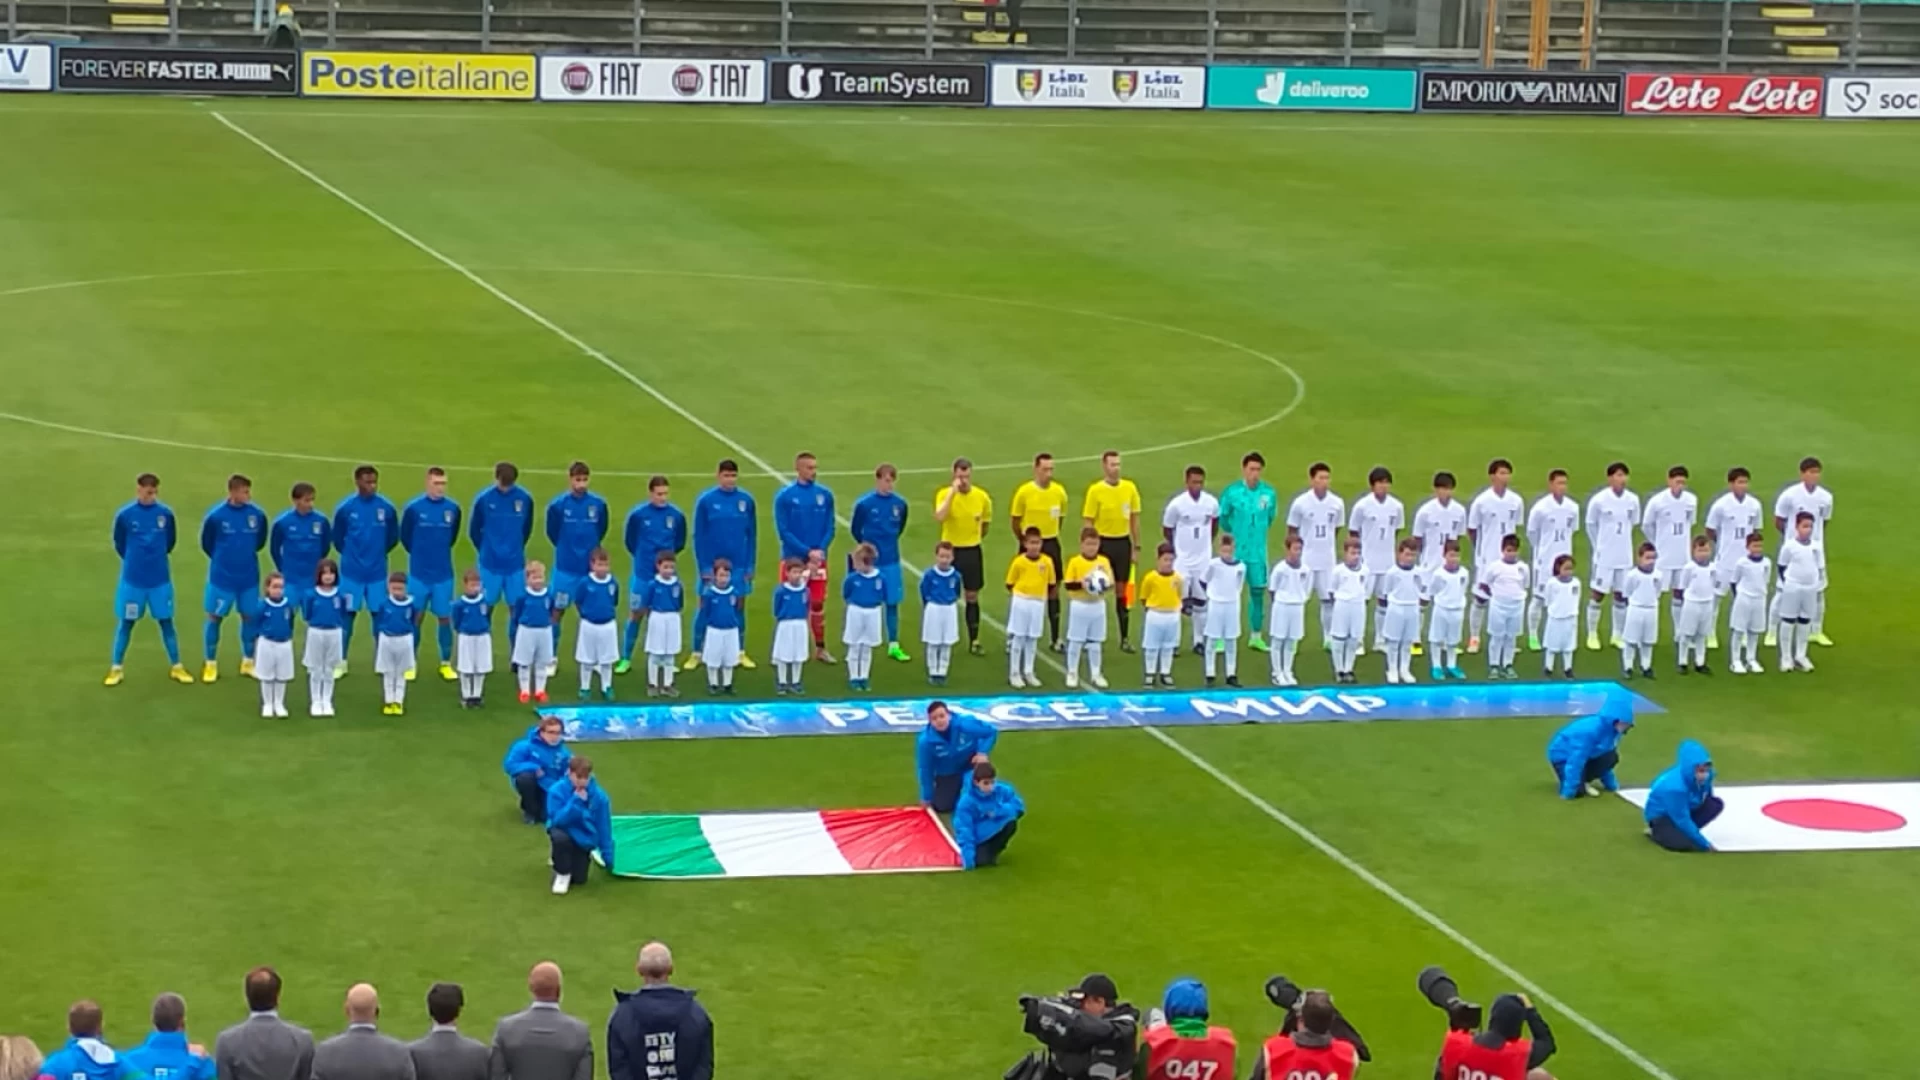 Castel Di Sangro: finisce 1 a 1 Italia -Giappone Under 21. La cronaca ed il tabellino del match dallo stadio Teofilo Patini.